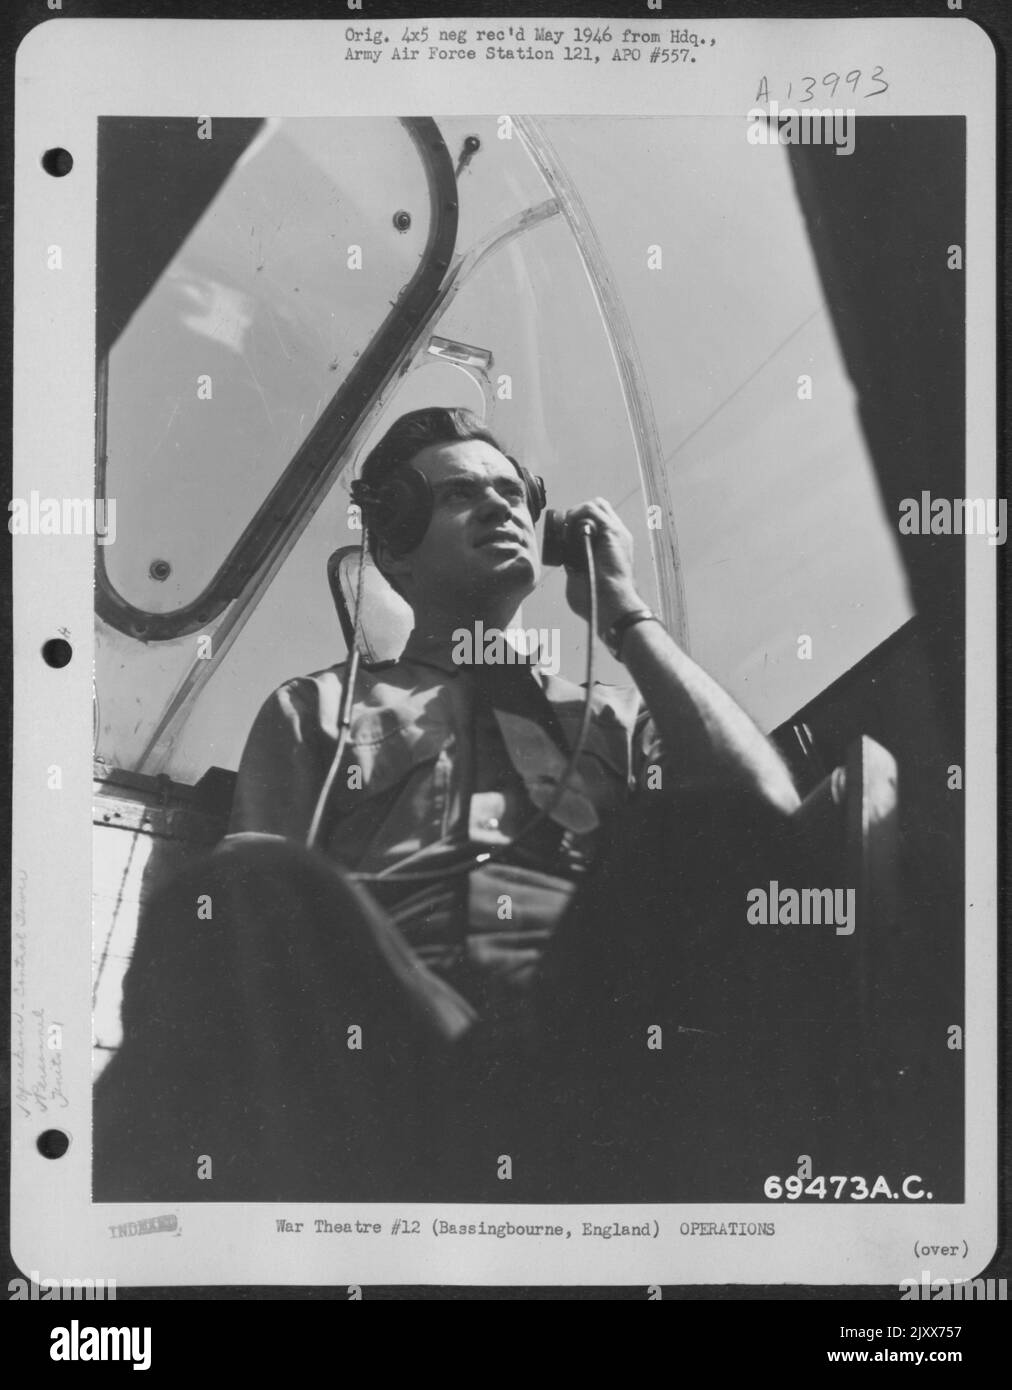 Dalla sua posizione nella cupola in Plexi-vetro di Una torre di controllo mobile, Sgt. R.B. Smith di Oklahoma City, Oklahoma ha una vista inobstruted di 360 gradi. Qui, Sgt. Smith parla, via radio, al pilota di Un aereo del gruppo bomba 91st che entra per Un atterraggio a. Foto Stock